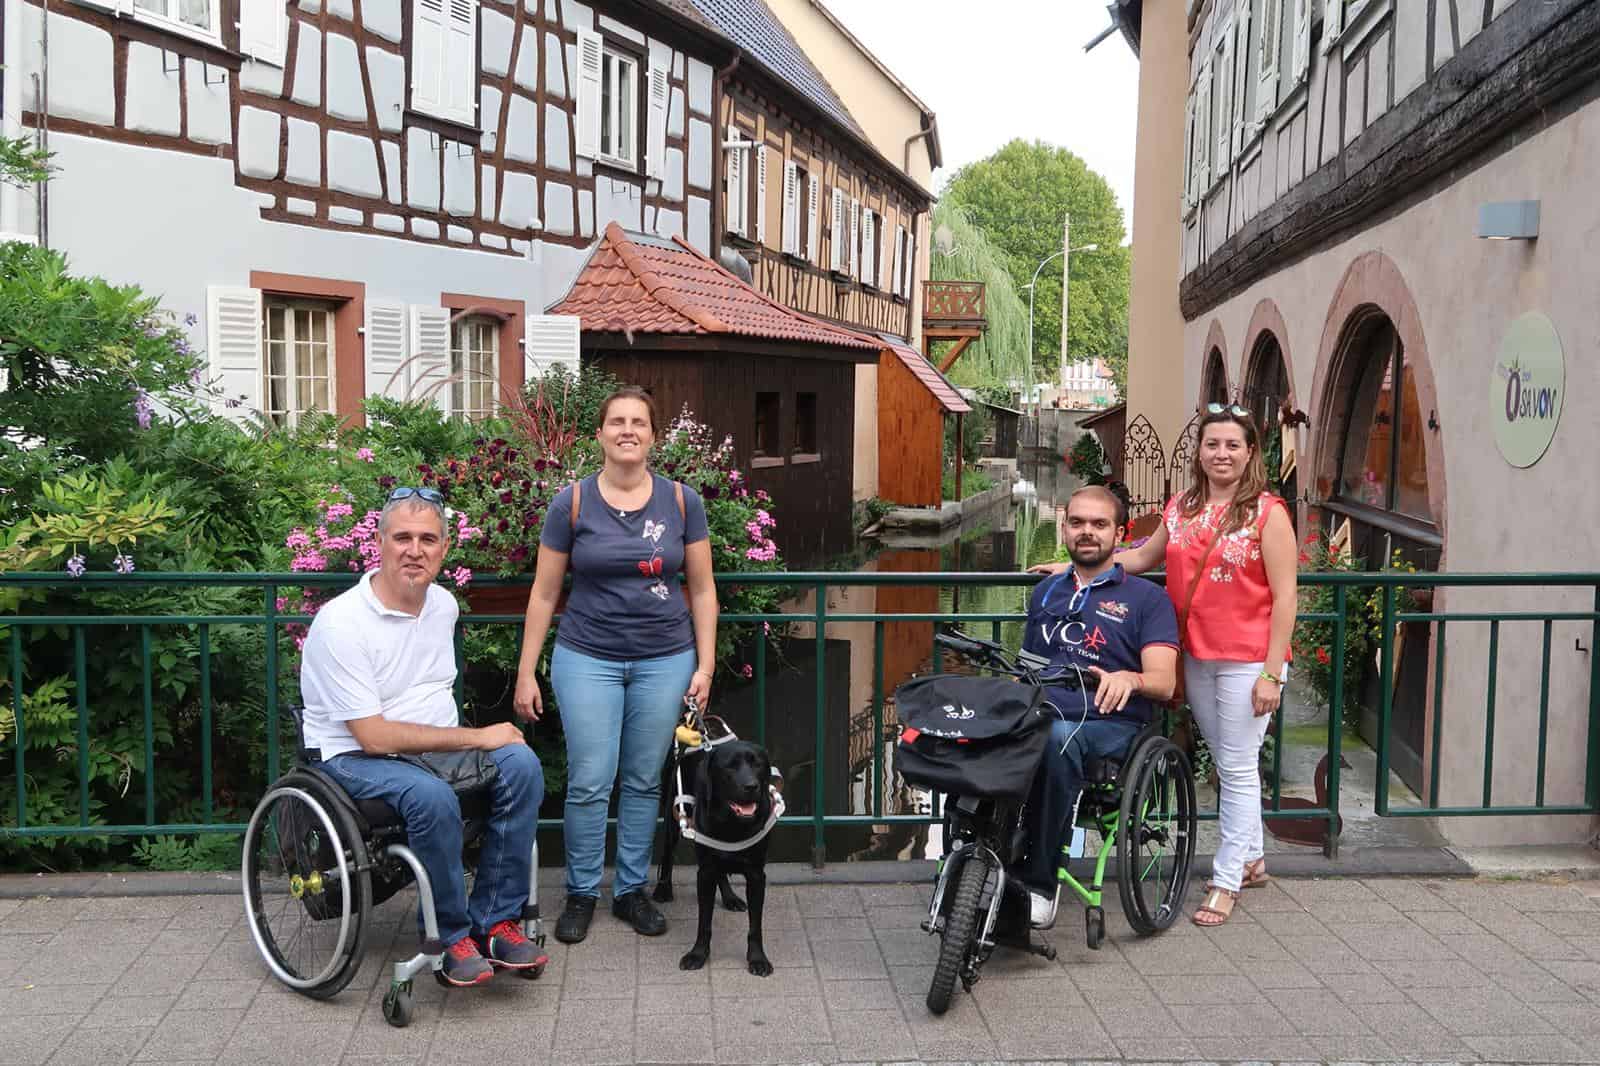 Fam Trip inclusivo por el Palatinado – Sur de Alemania – Día 2